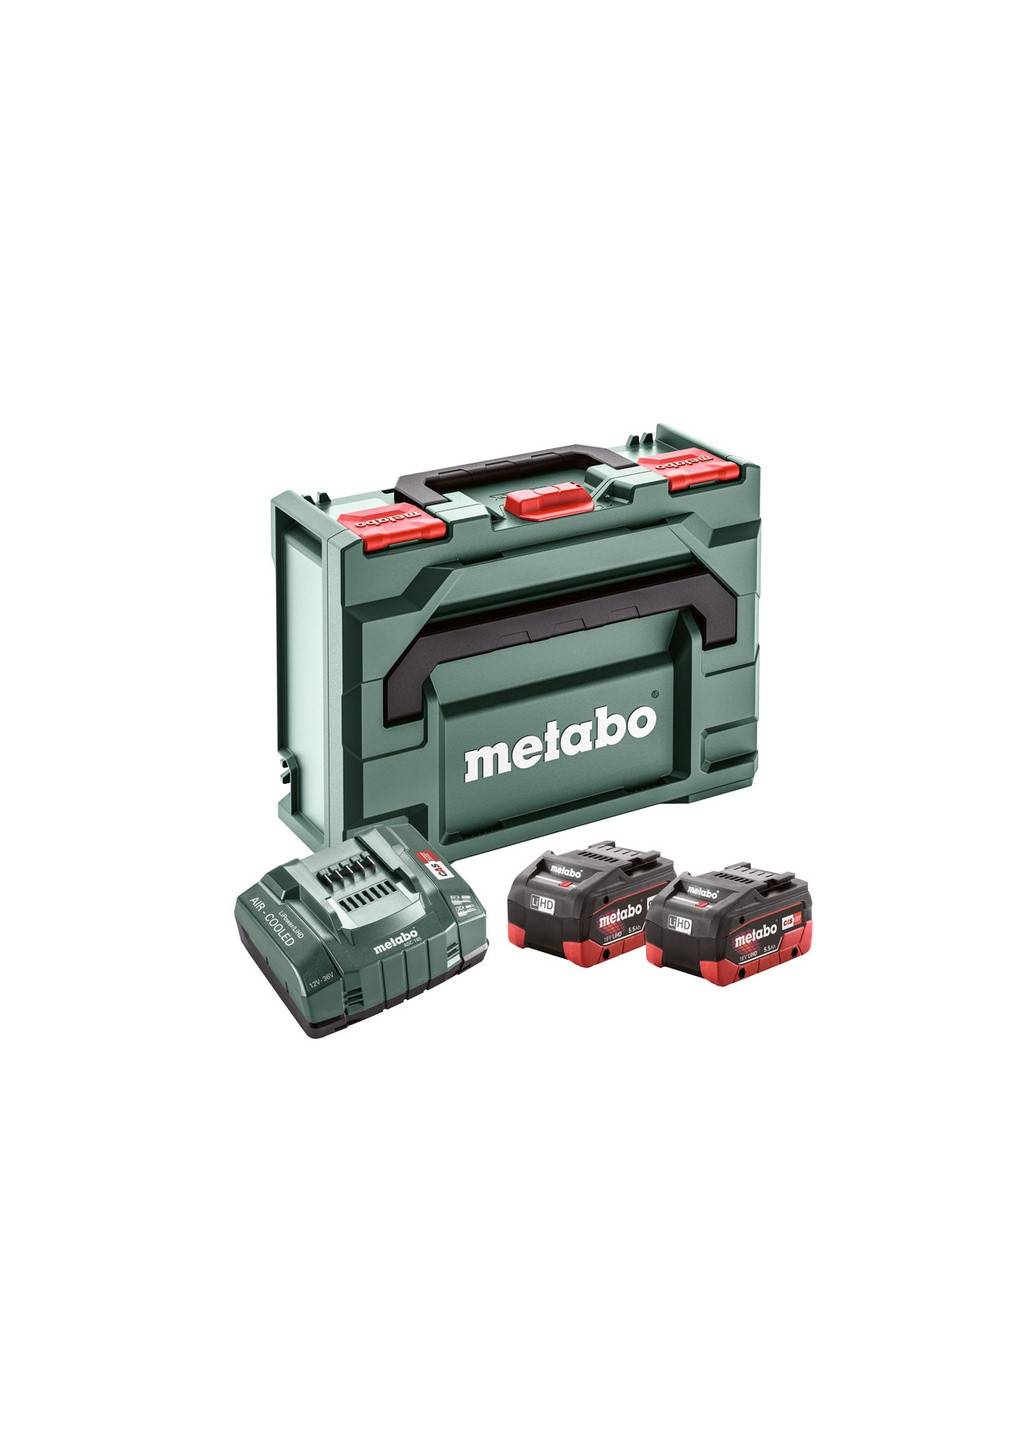 Базовый комплект аккумуляторных батарей 18 В 2x5.5 Ач LiHD + зарядное устройство ASC 145 (MetaLoc) 685077000 (8183) Metabo (266339592)